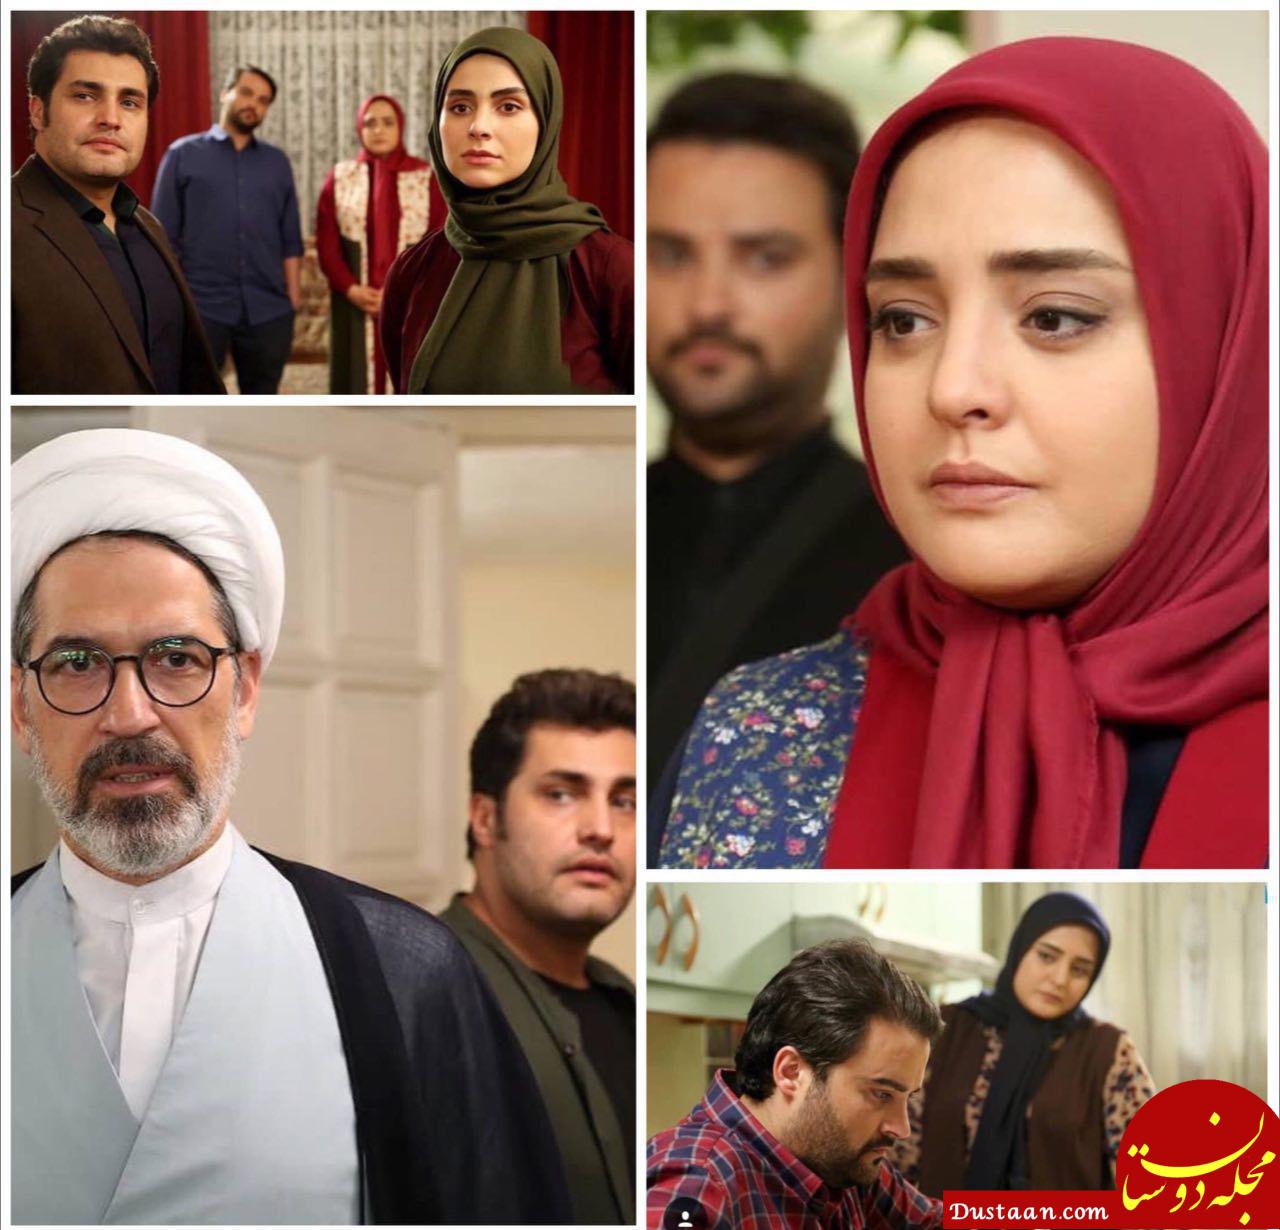 www.dustaan.com-خلاصه داستان و بازیگران سریال ستایش ۳ +ساعت پخش و تصاویر